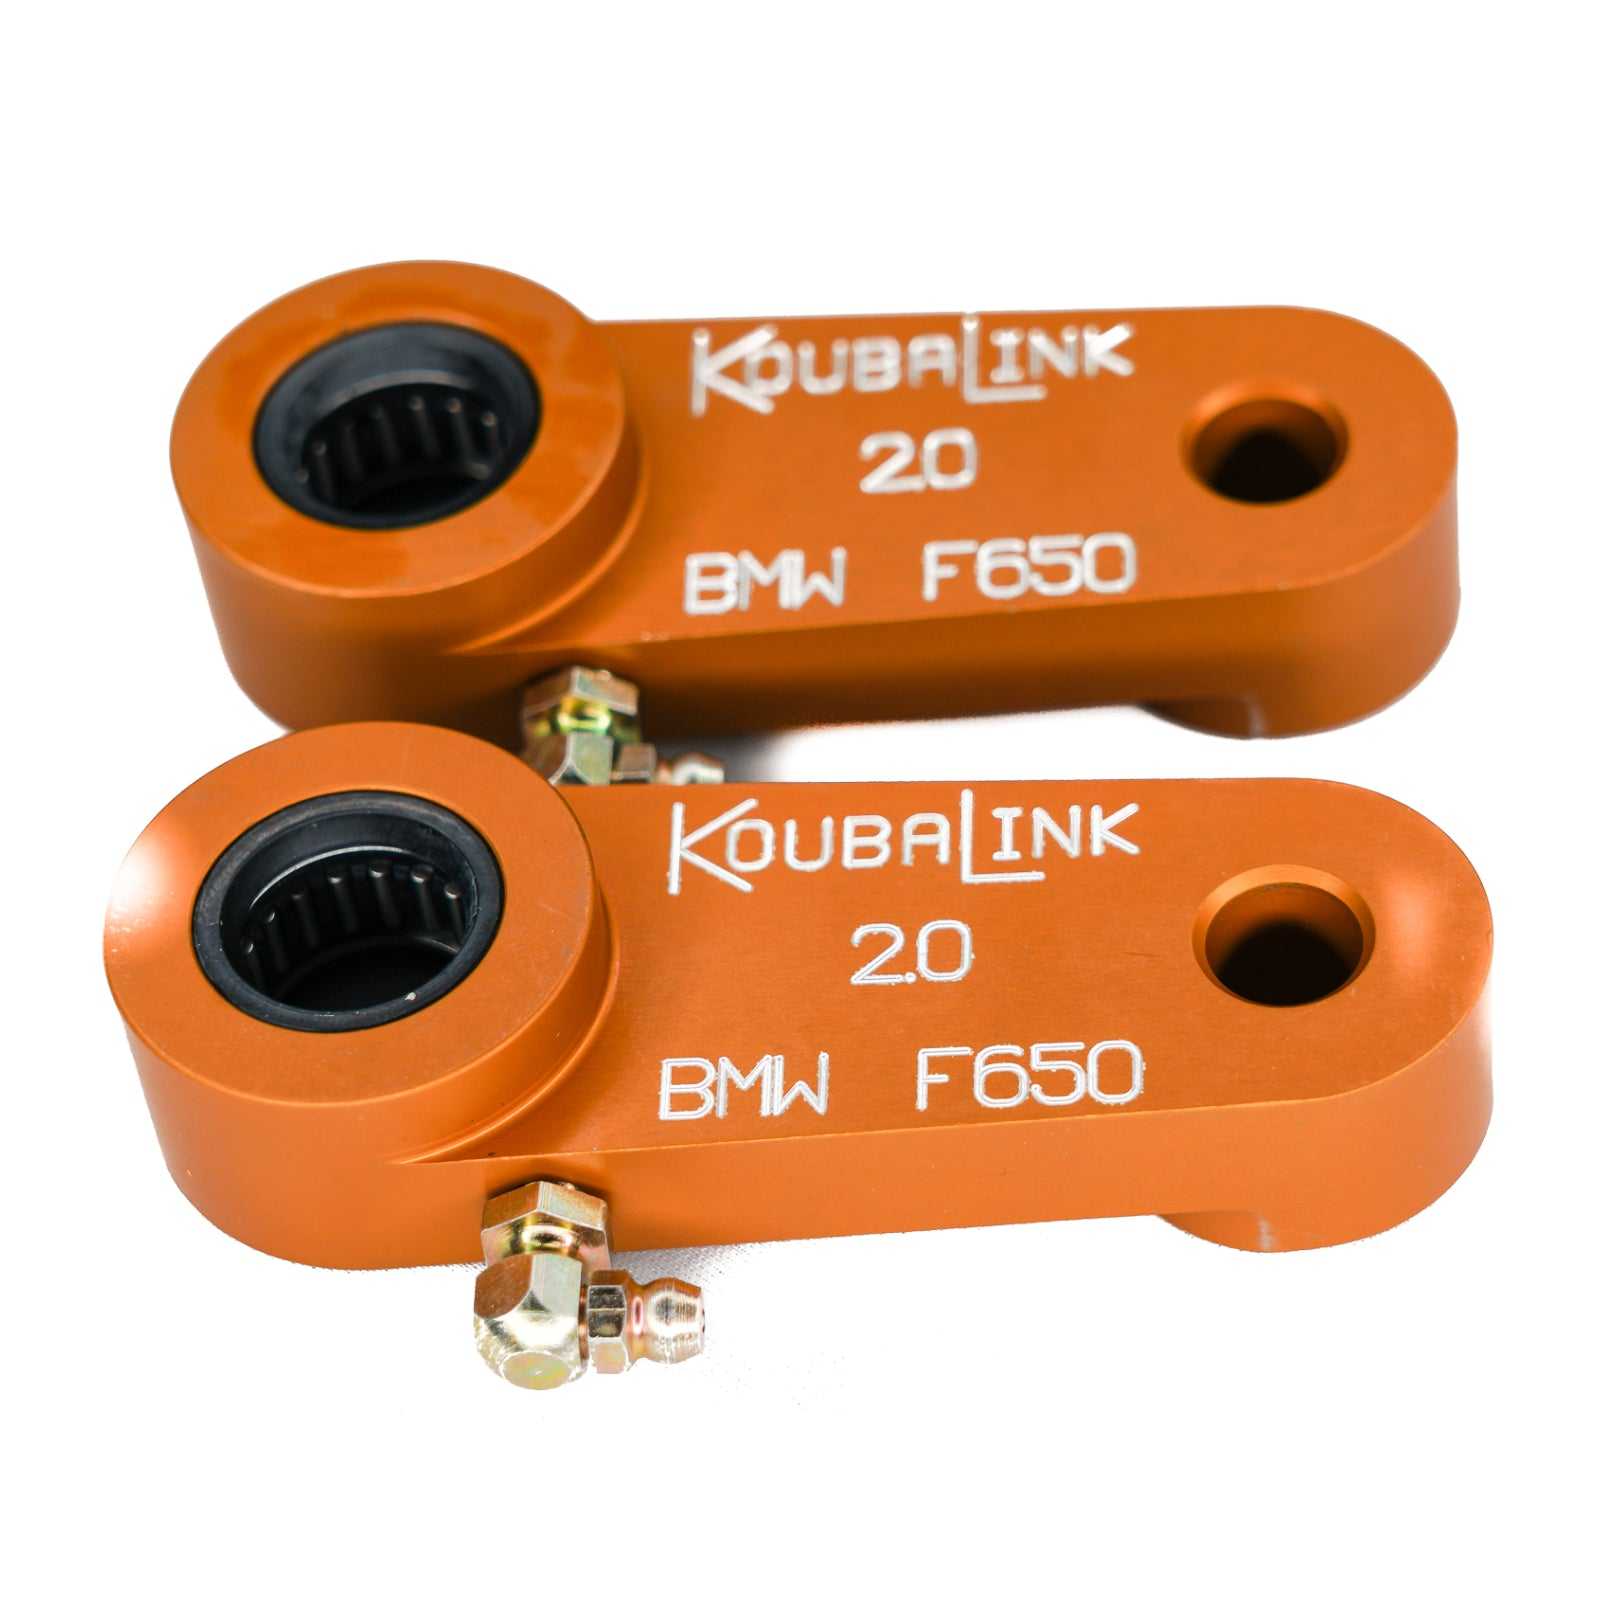 KoubaLink, Koubalink 51 mm Tieferlegungsgestänge F650-2 – Orange